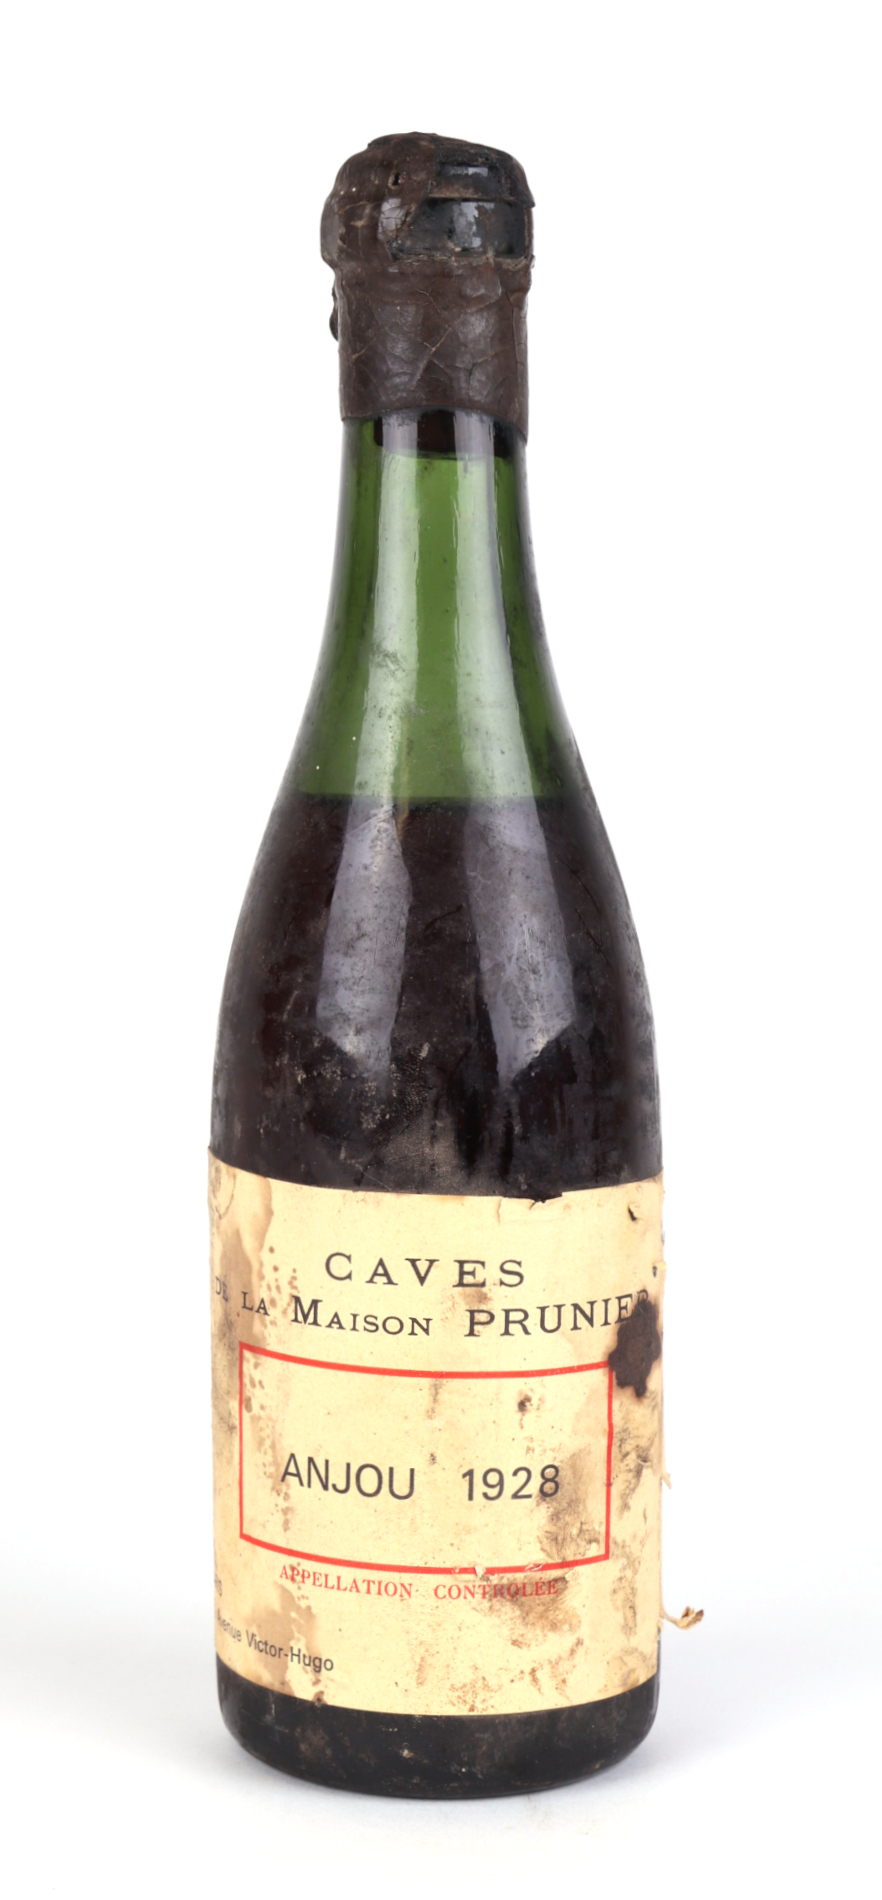 A half bottle of Caves de la Maison Prunier, Anjou 1928.